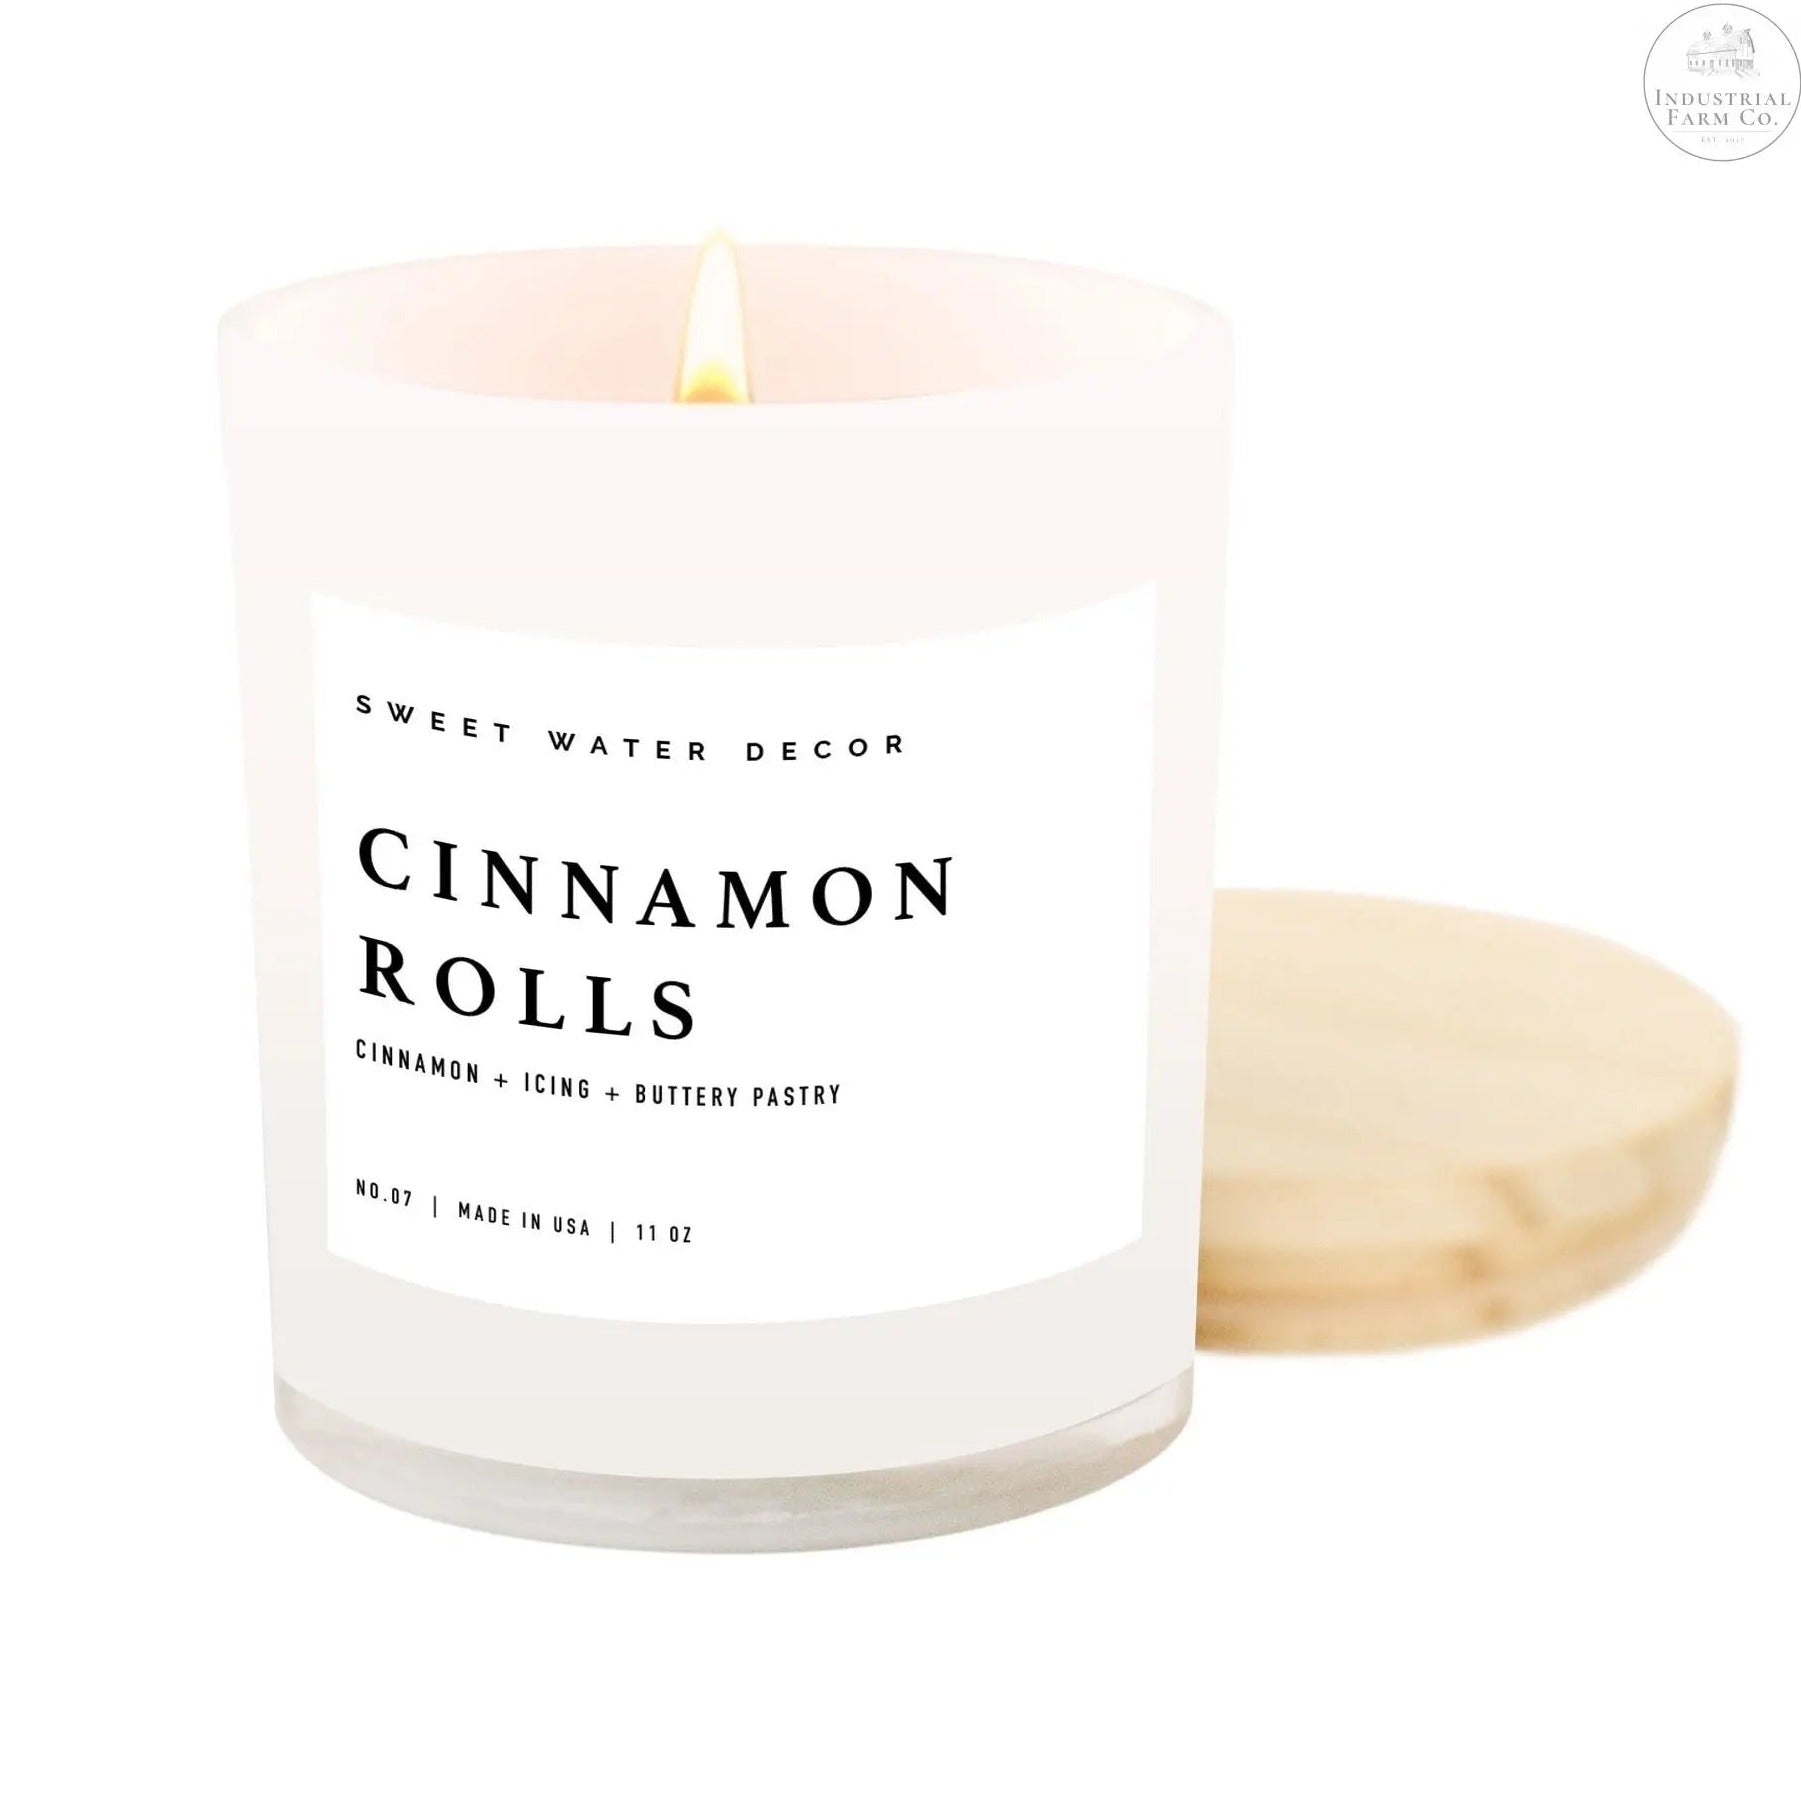 Cinnamon Rolls Soy Candle     | Industrial Farm Co